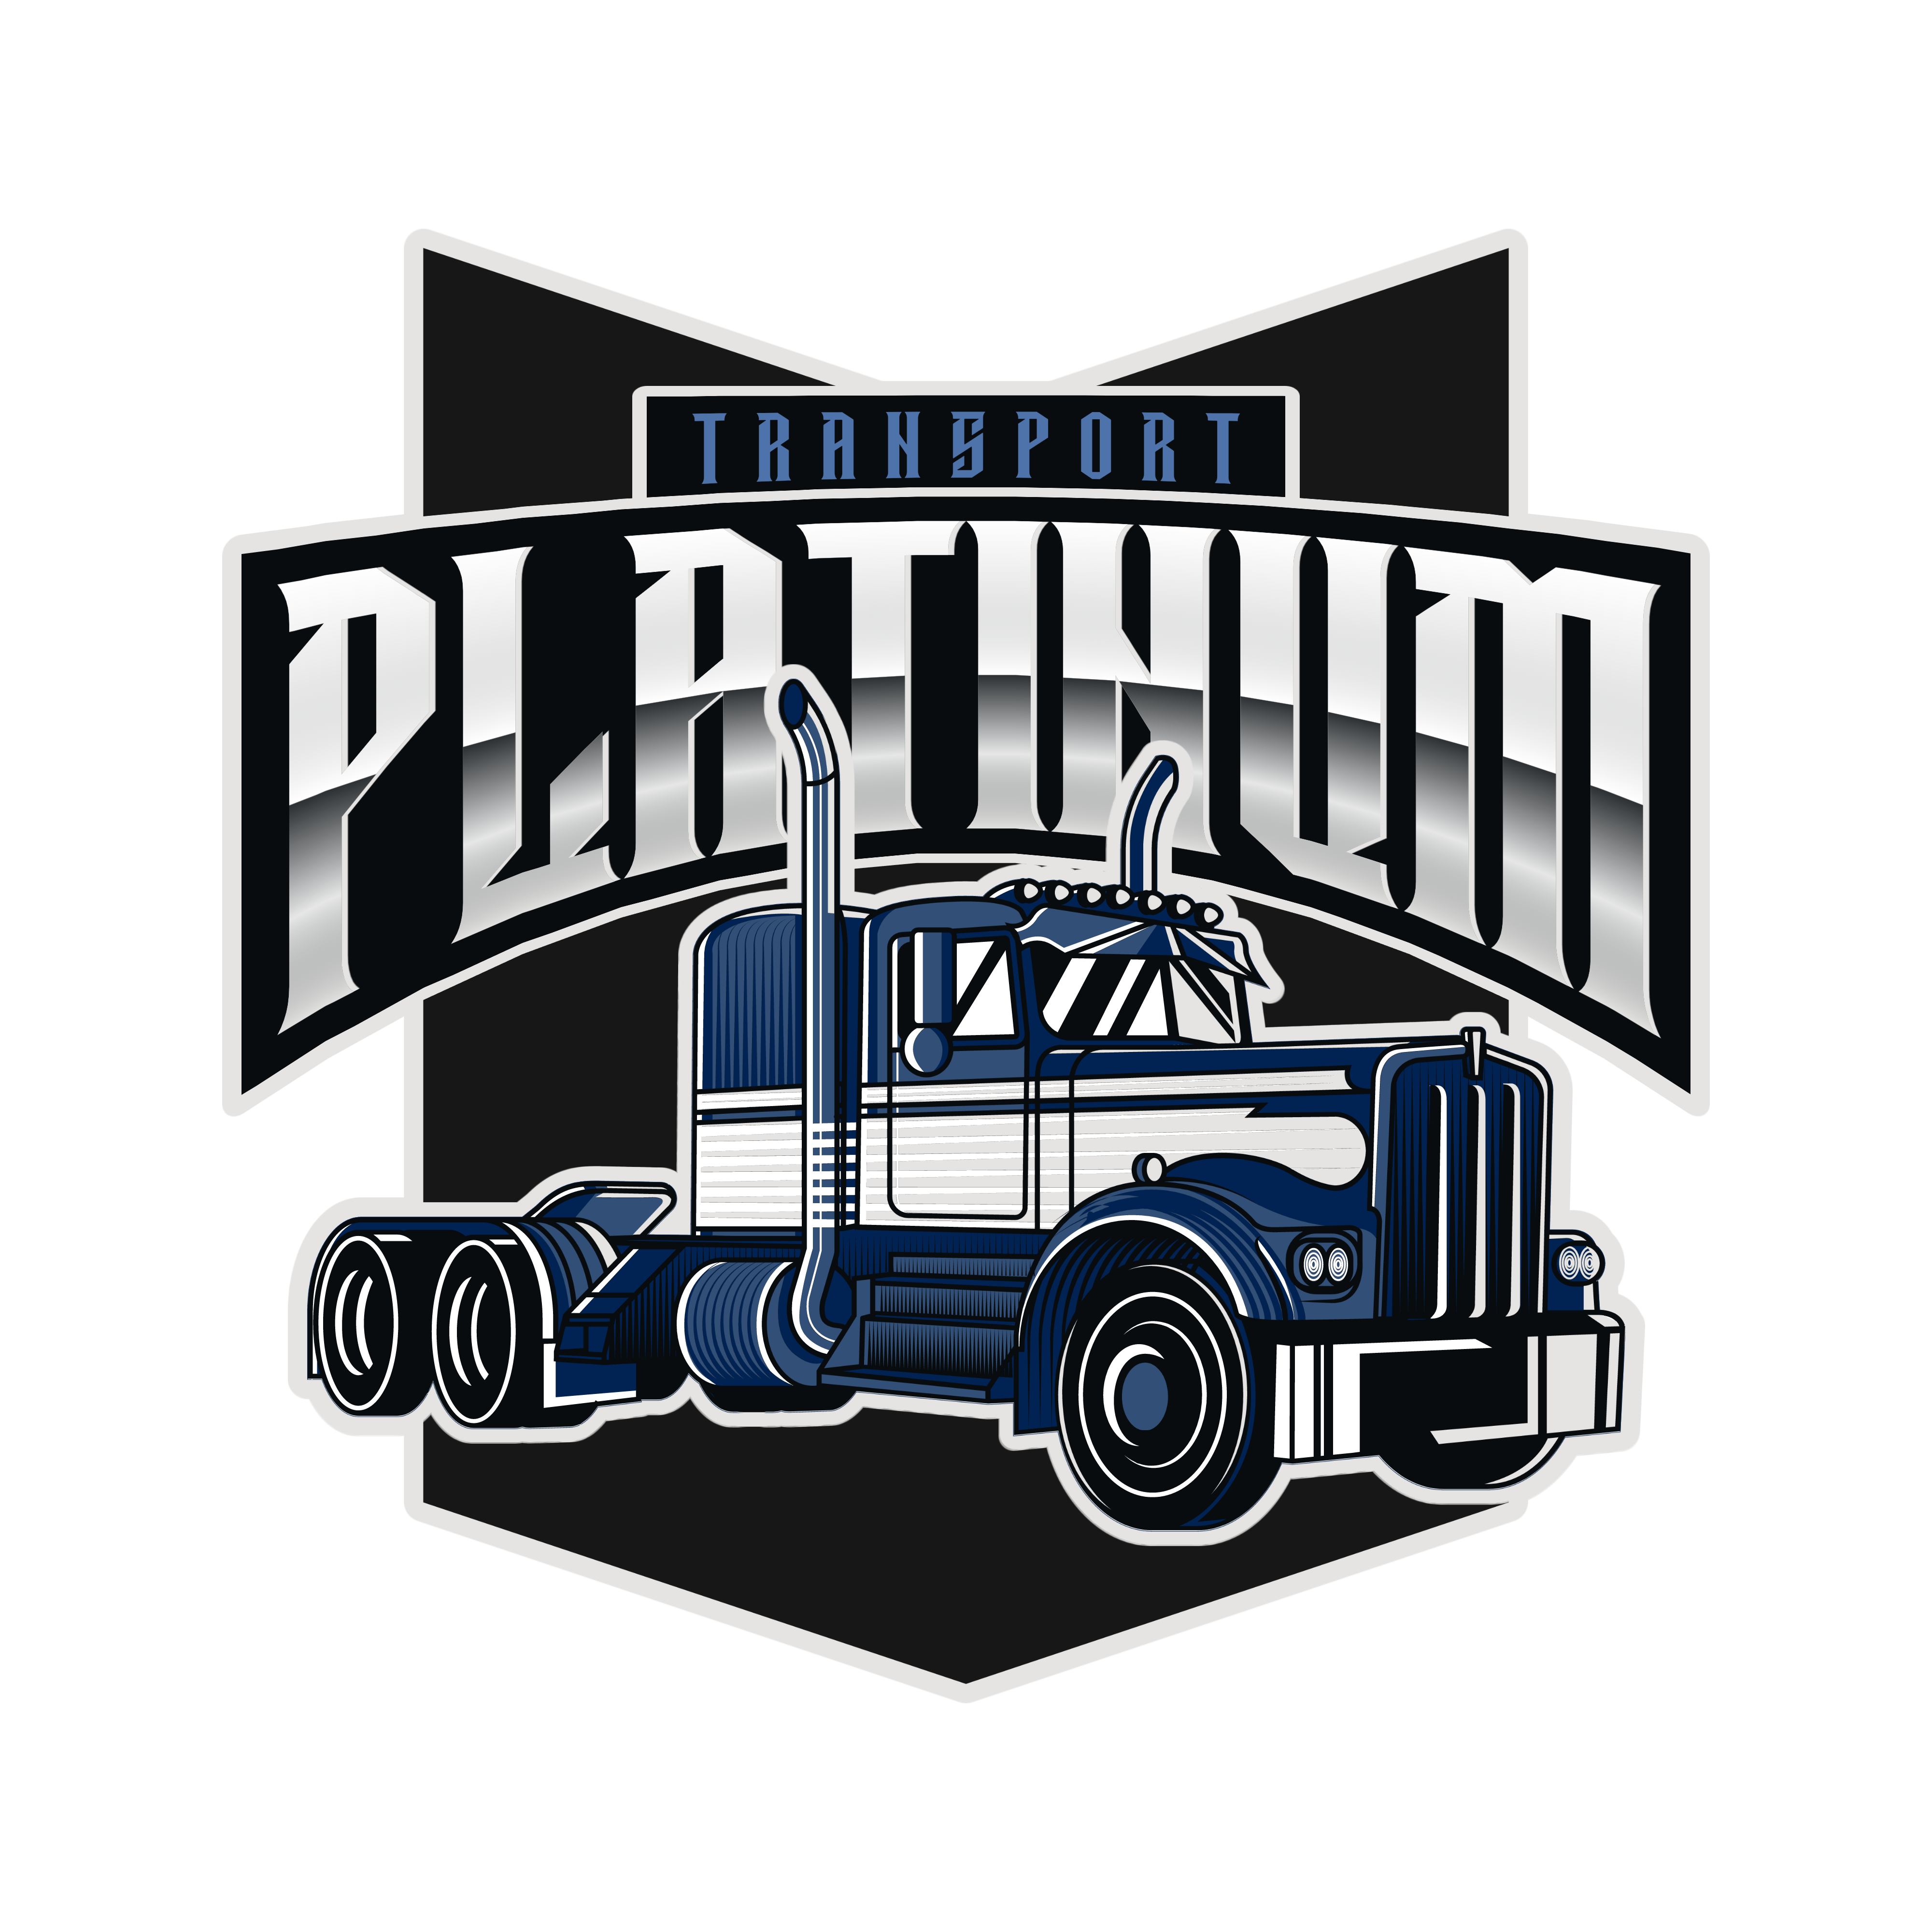 Platinum Transport